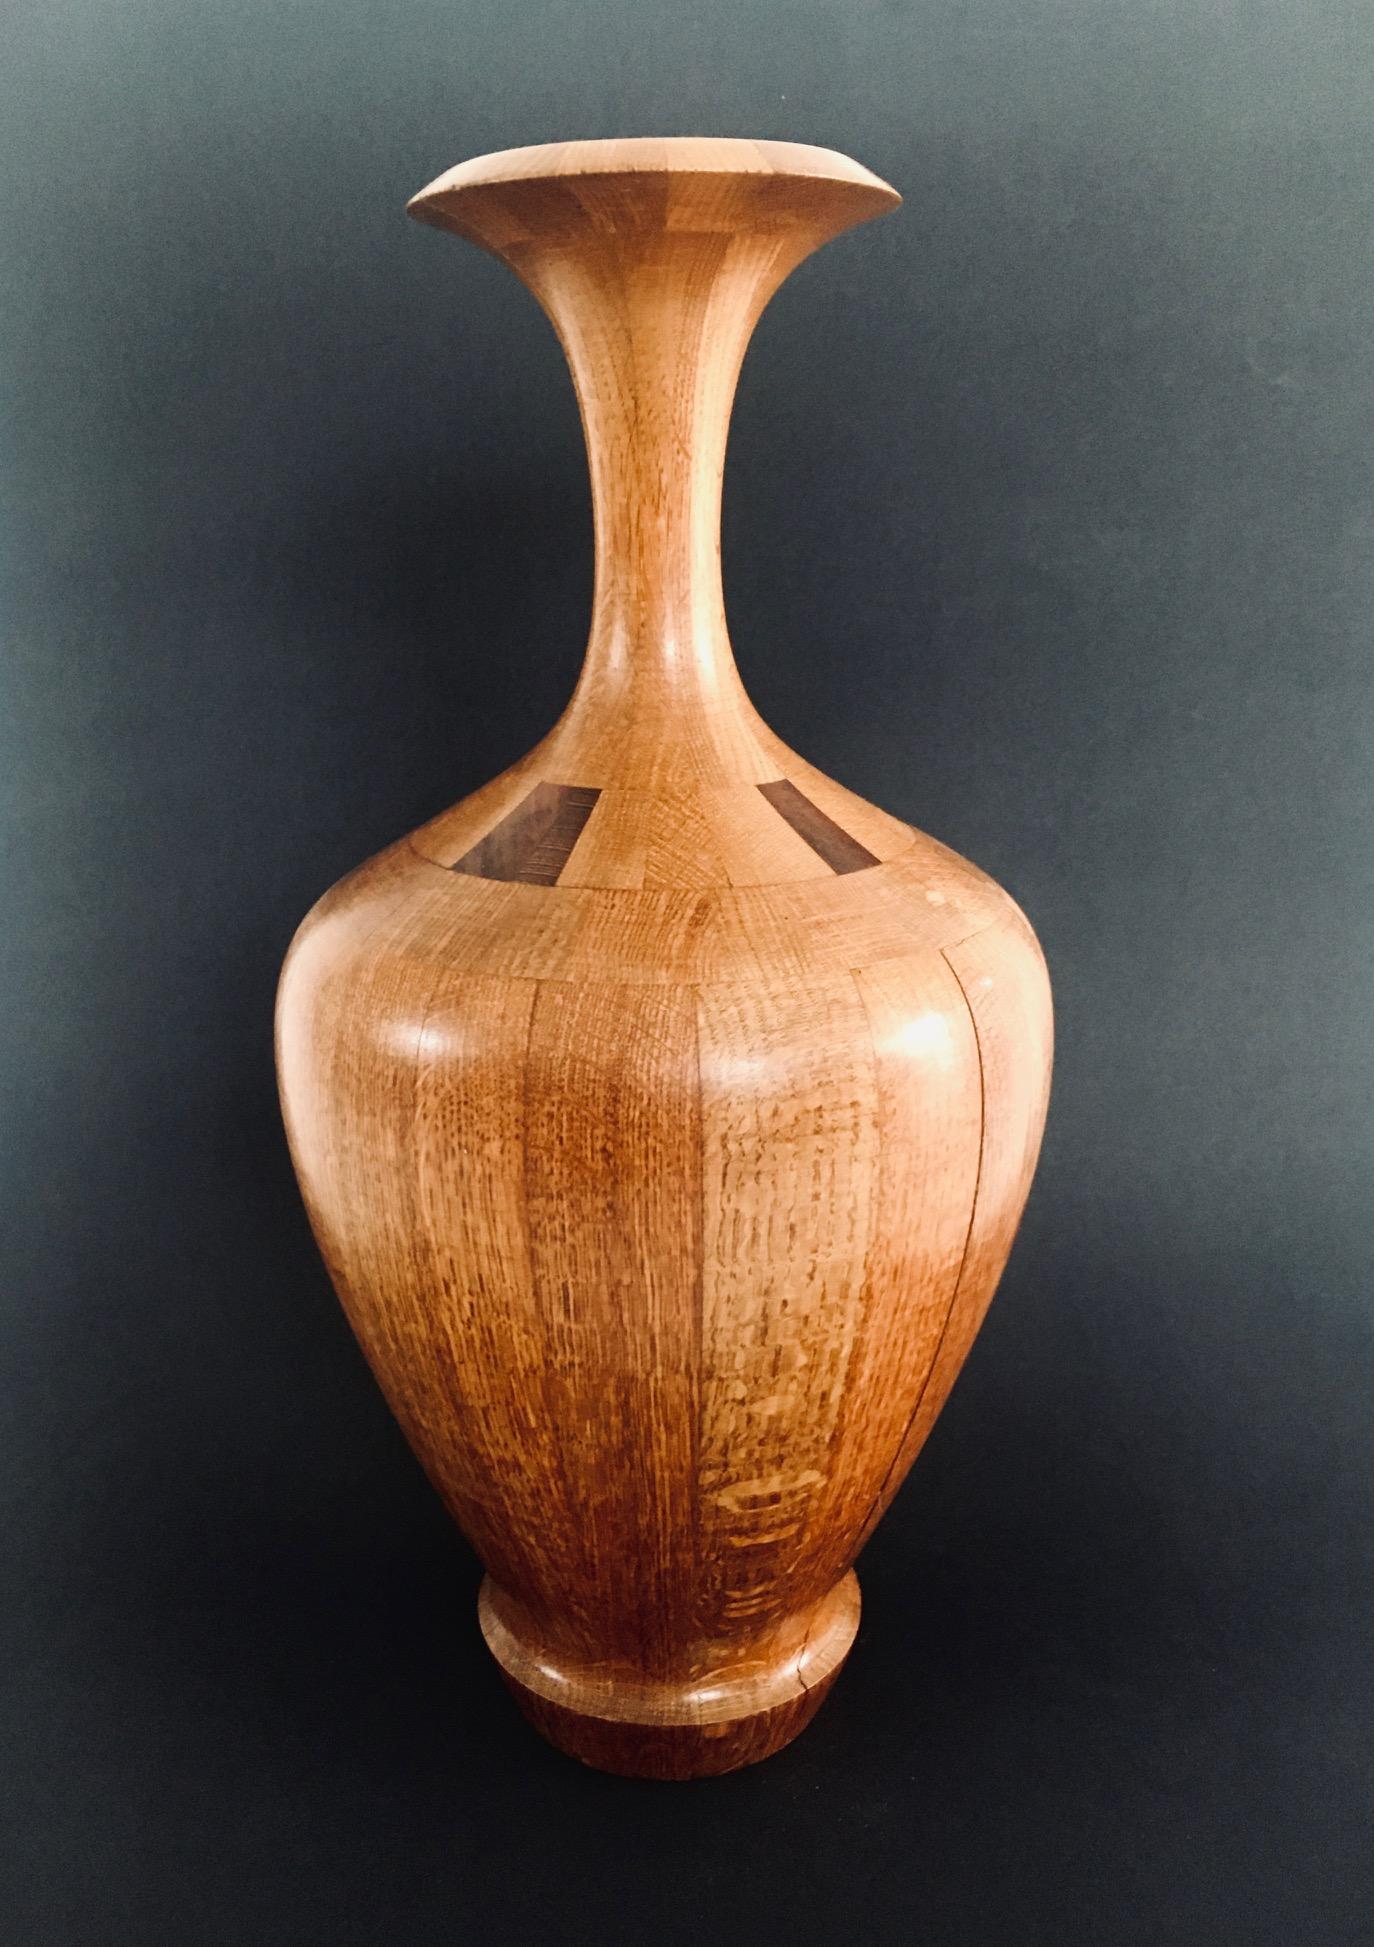 Vintage RARE Midcentury Art Vase in Hartholz von Maurice Bonami für De Coene frères. Hergestellt in Belgien in den 1950er Jahren. Aus Hartholz gefertigte und gedrechselte große, kannelierte Vase in Trompetenform. Auf der Unterseite mit Bleistift